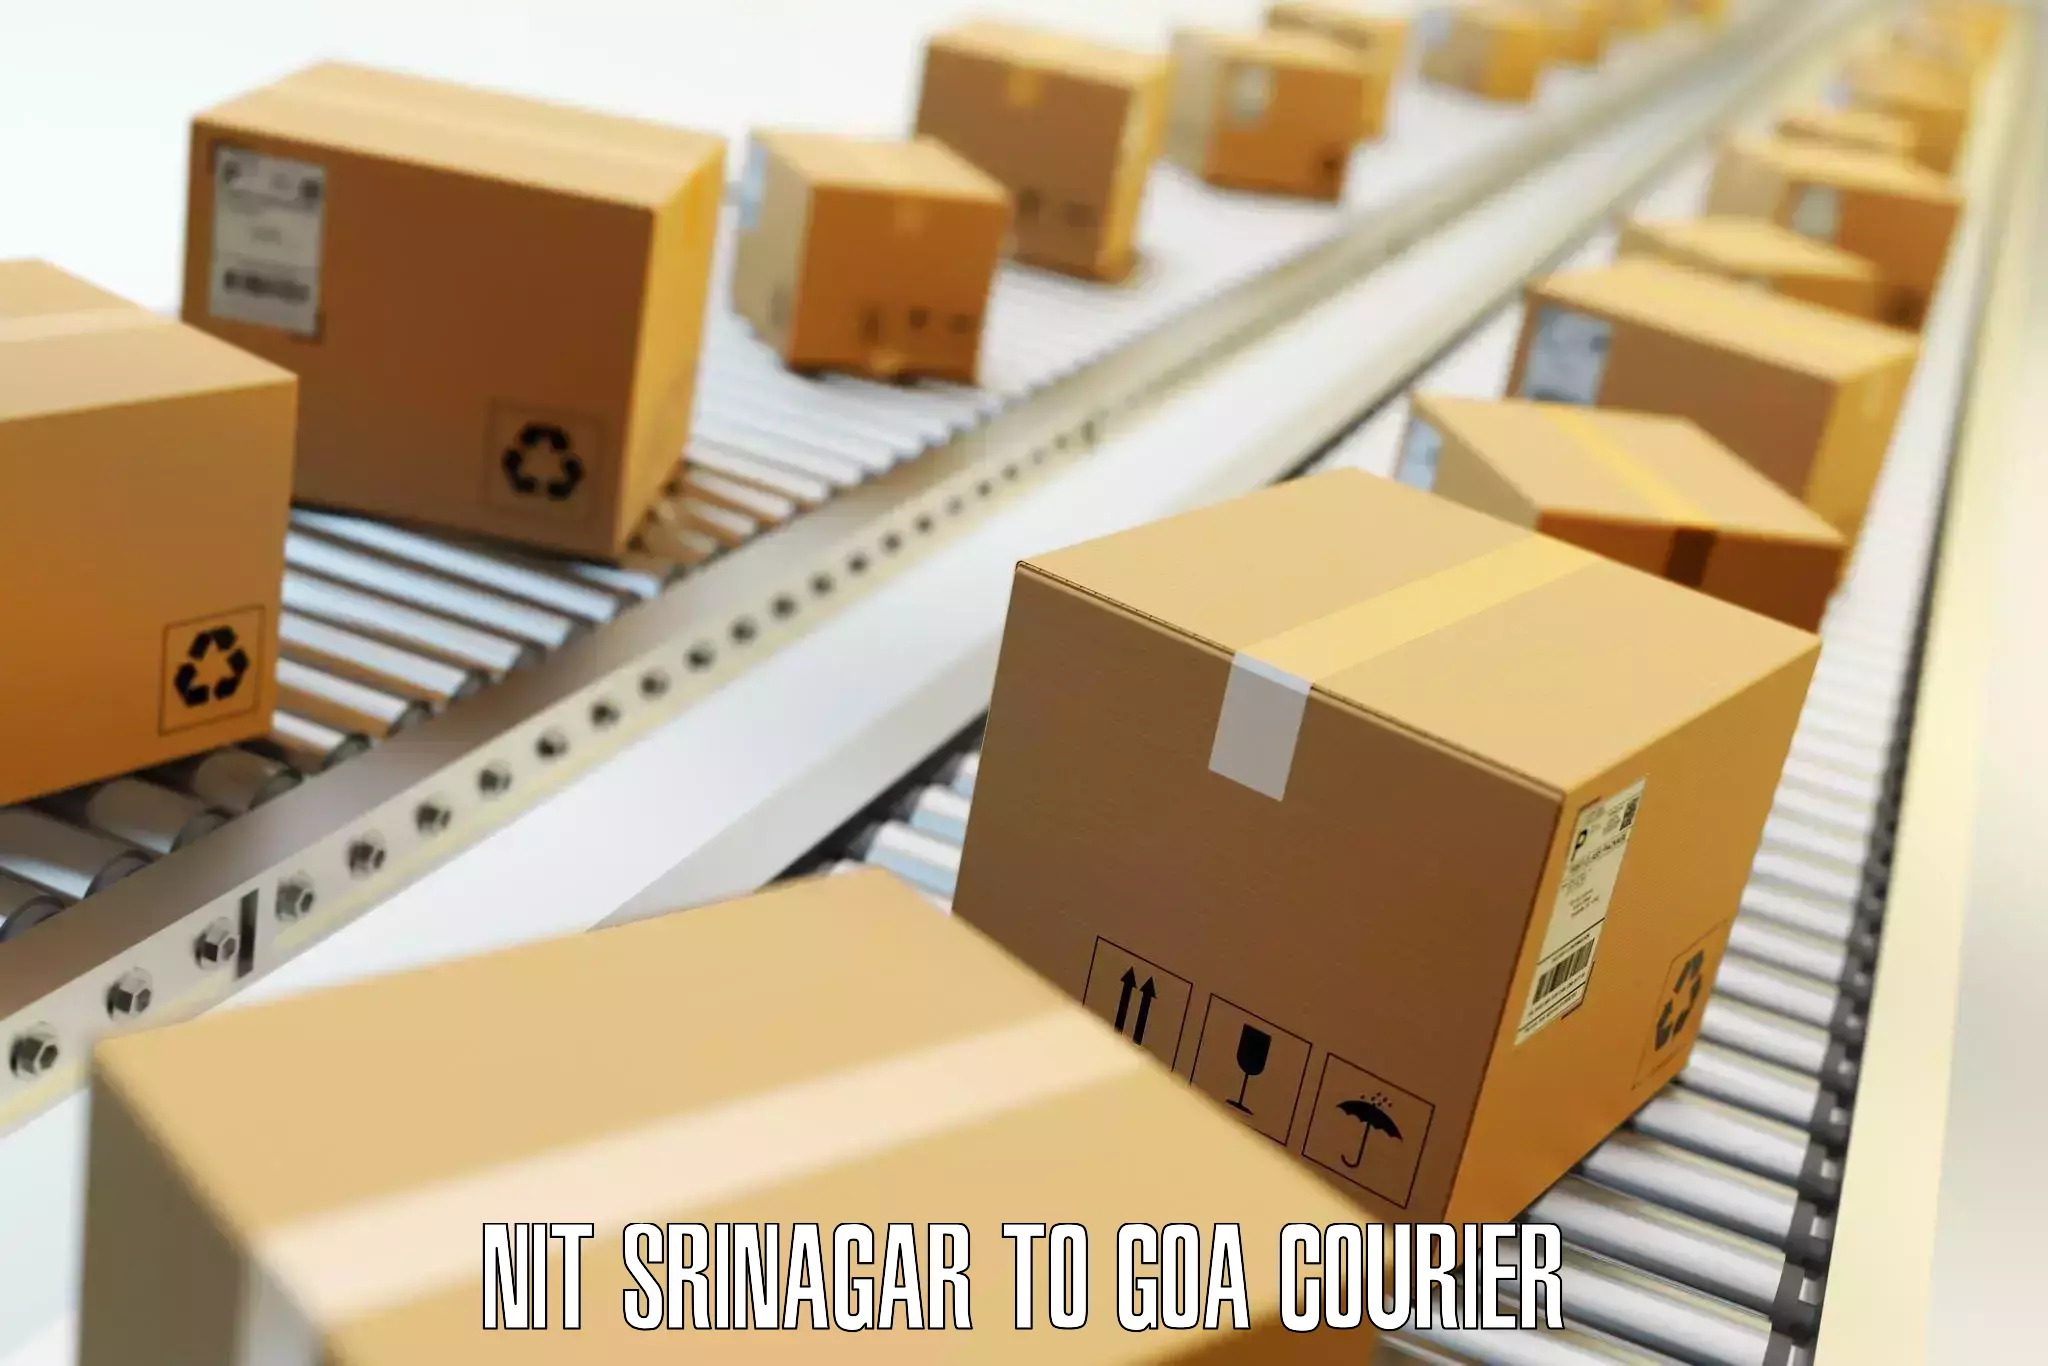 Luggage delivery logistics NIT Srinagar to Bicholim